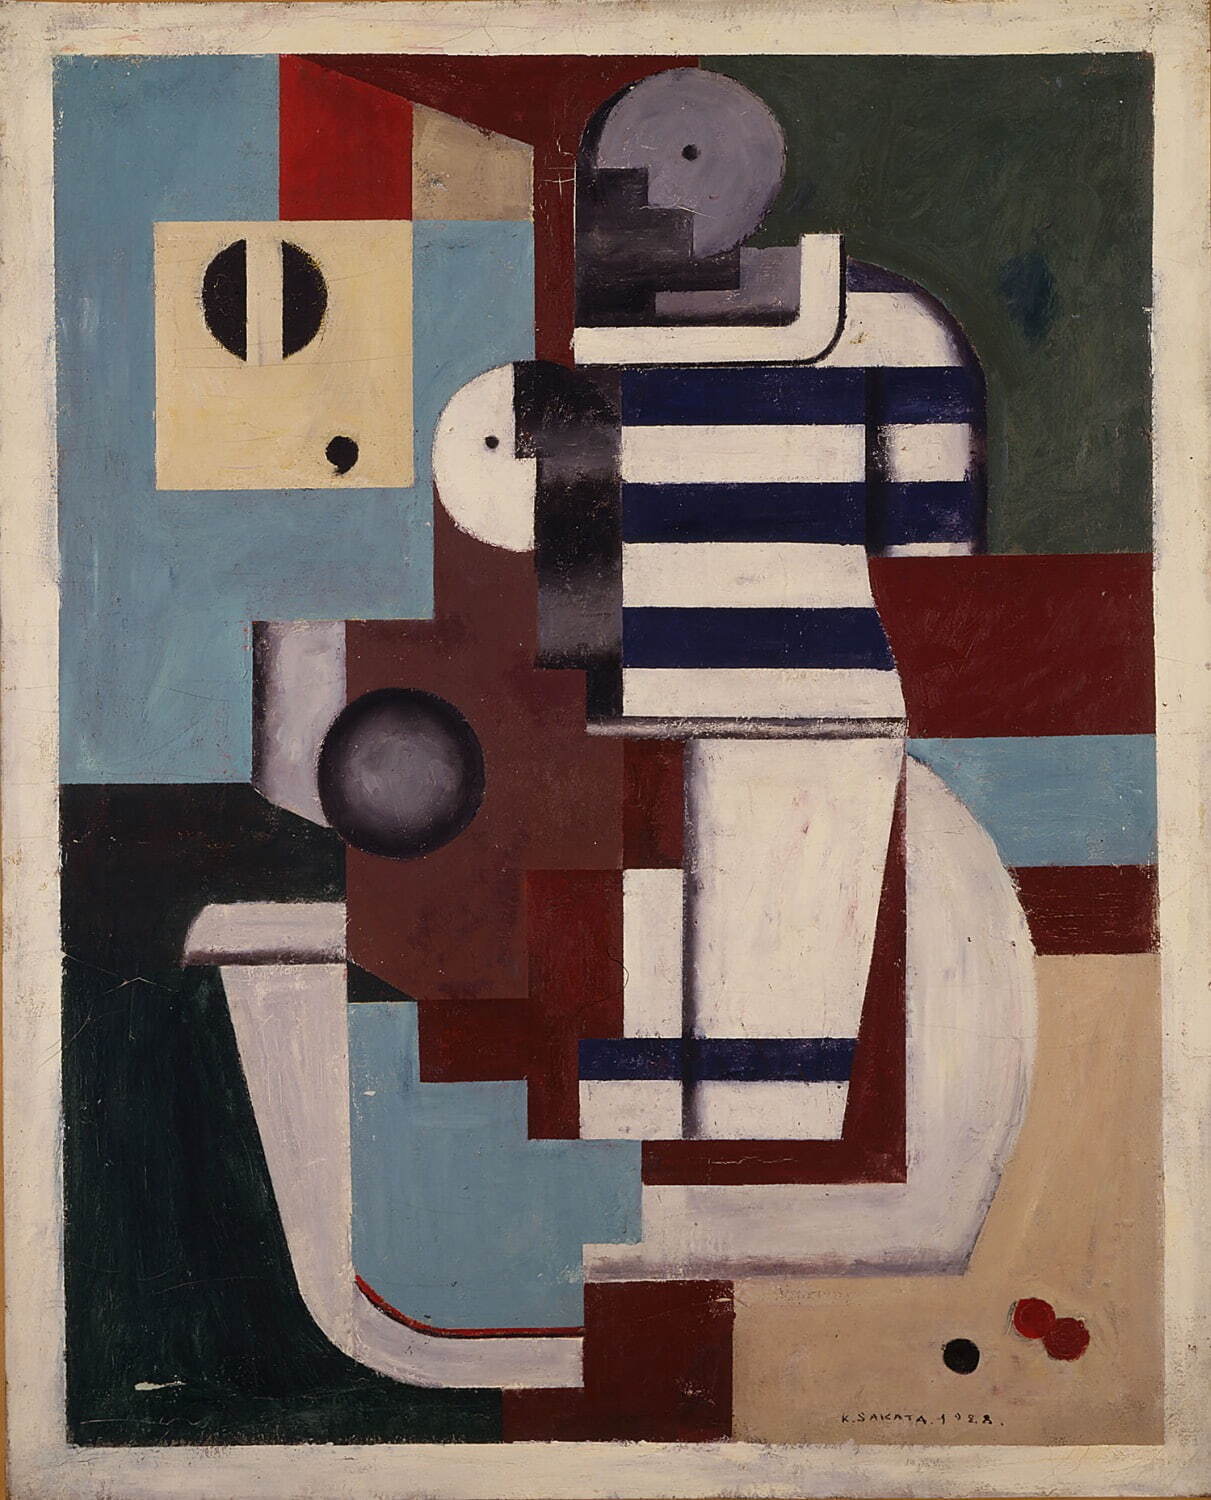 坂田一男 《浴室の二人の裸婦》 1928年
油彩、カンヴァス 目黒区美術館